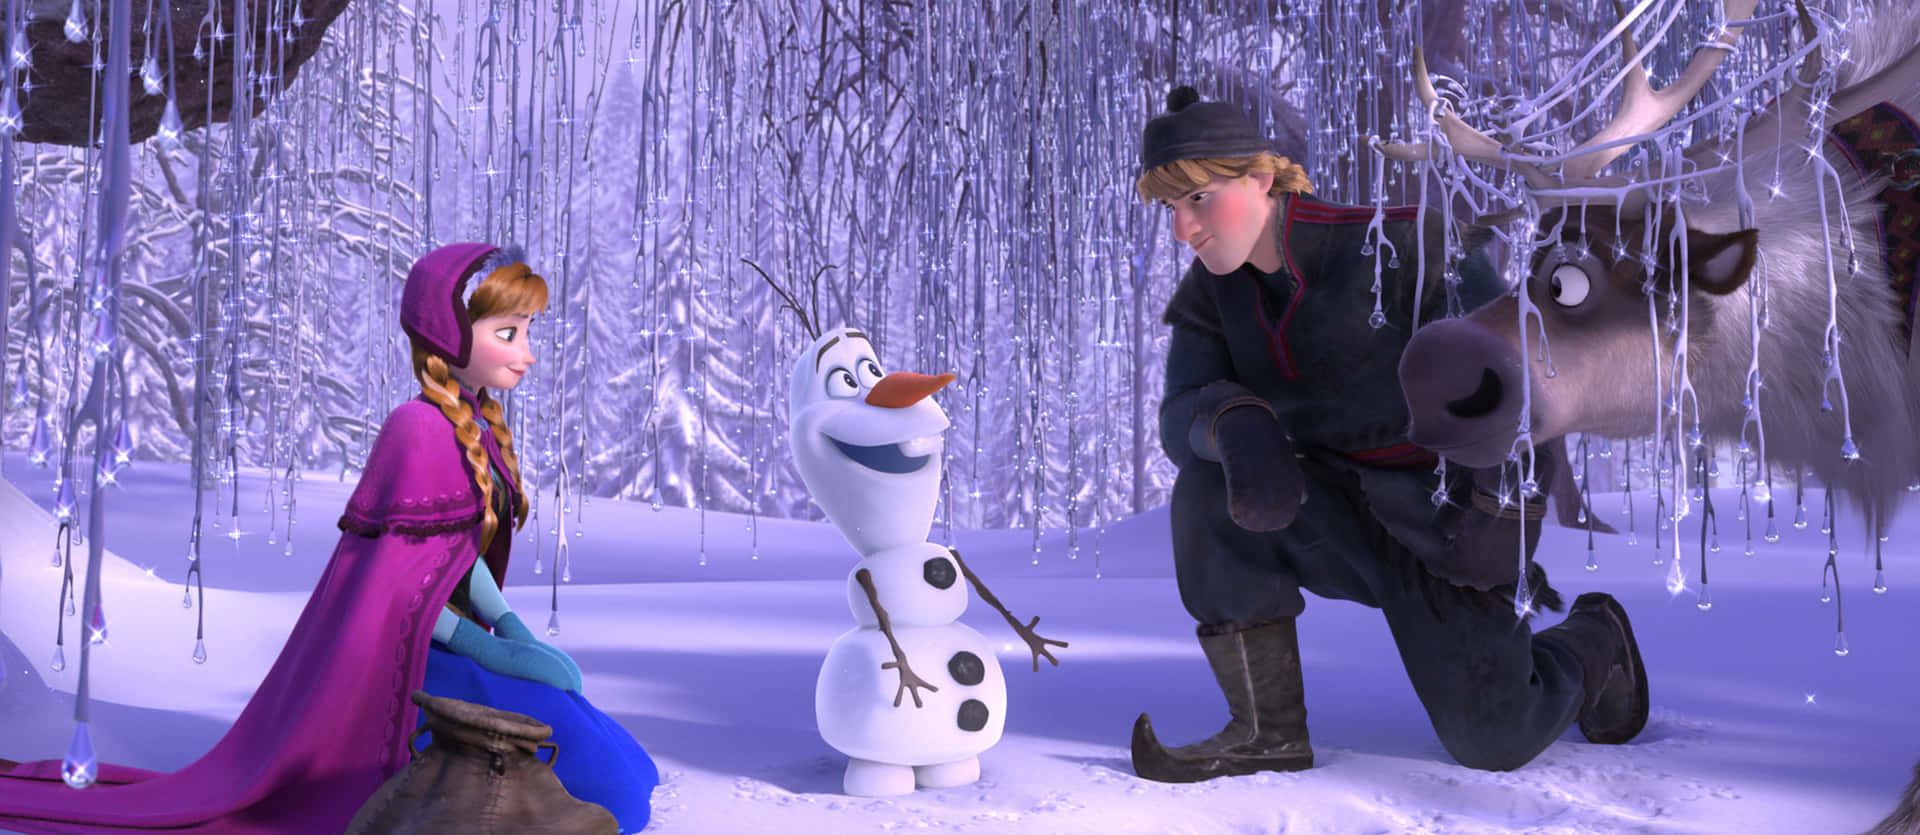 Imagende Frozen Con Anna, Olaf Y Kristoff